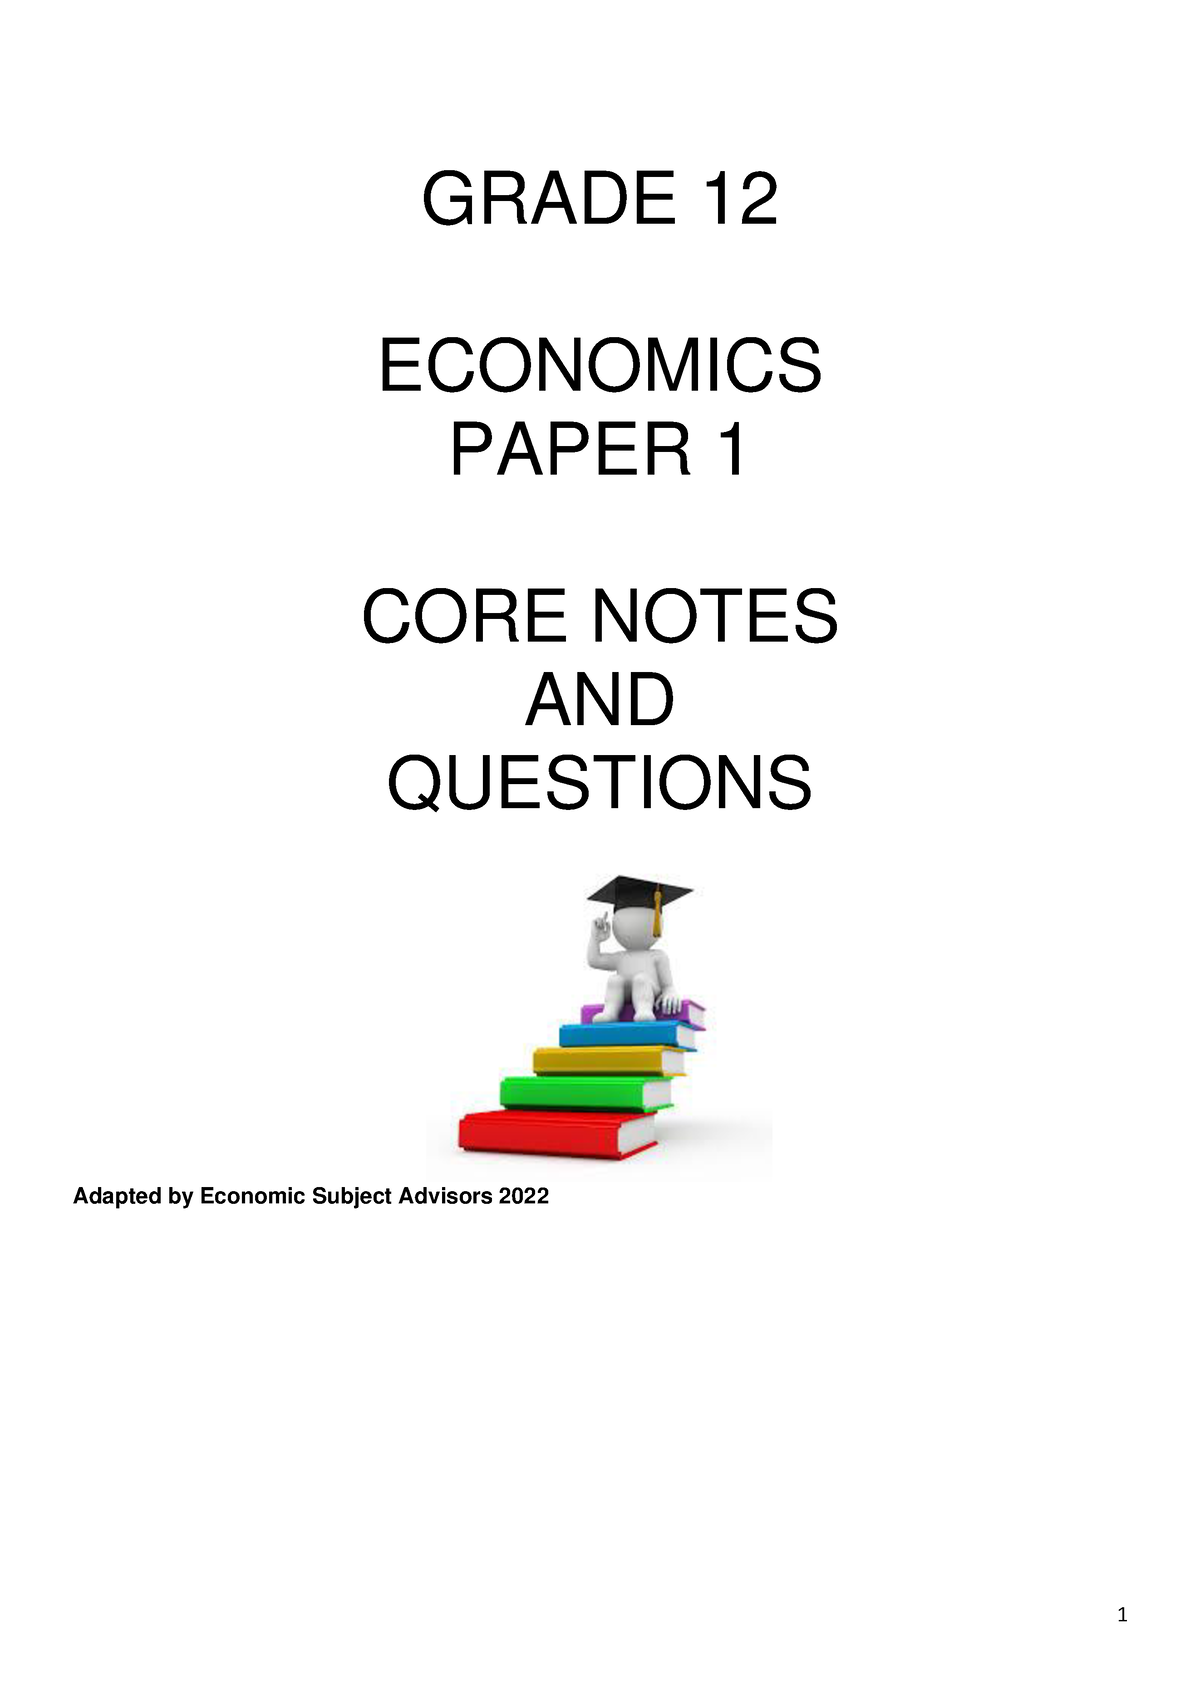 economics paper 1 topics for grade 12